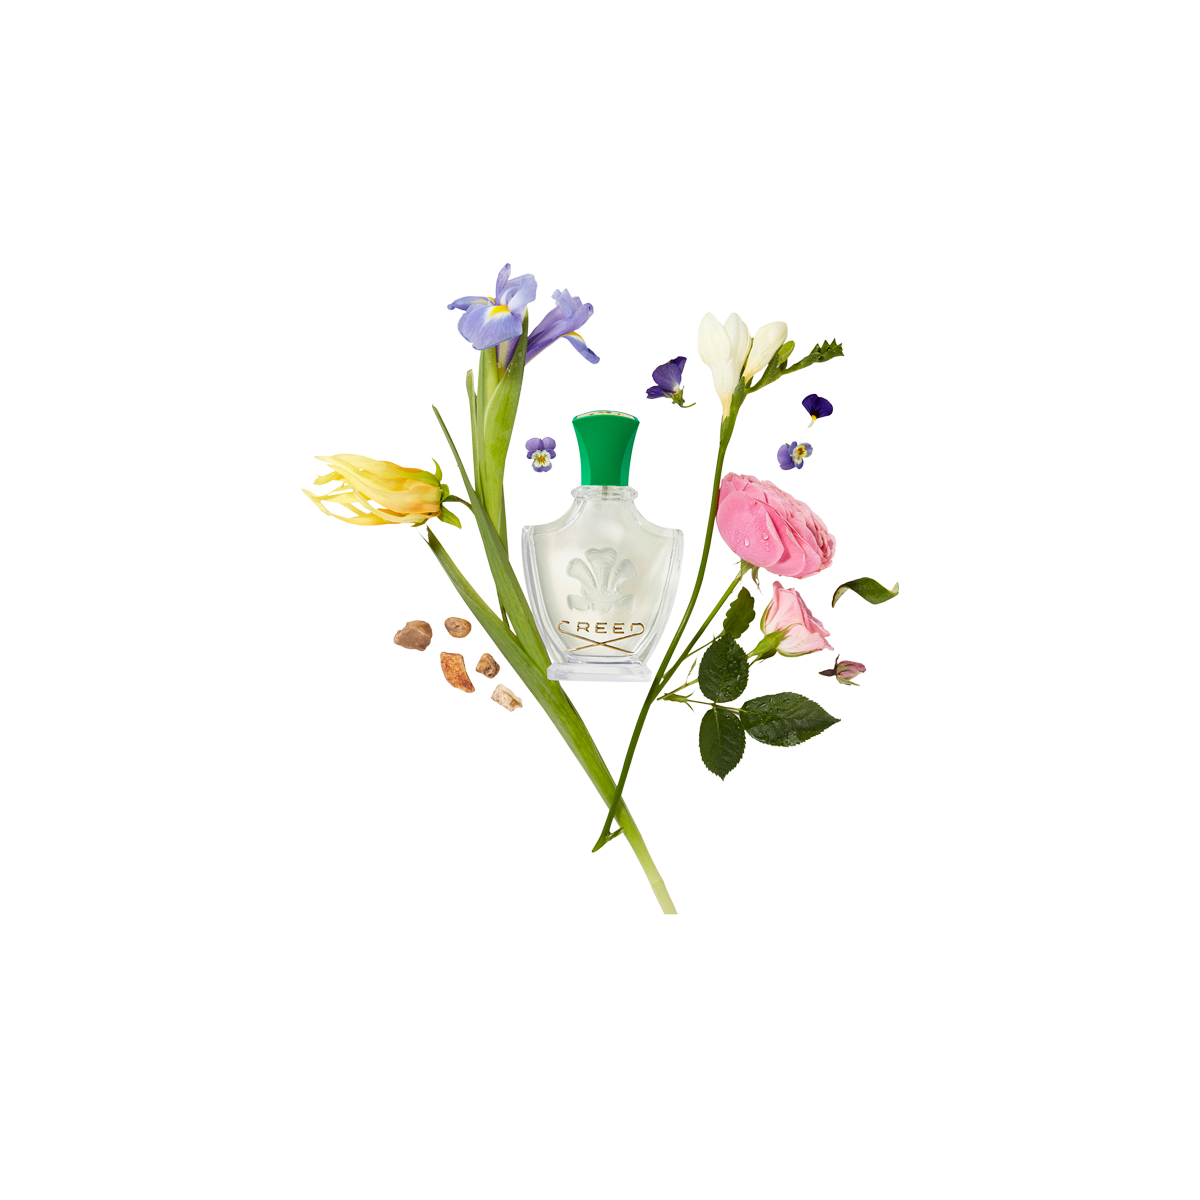 Creed - Fleurissimo Eau de Parfum